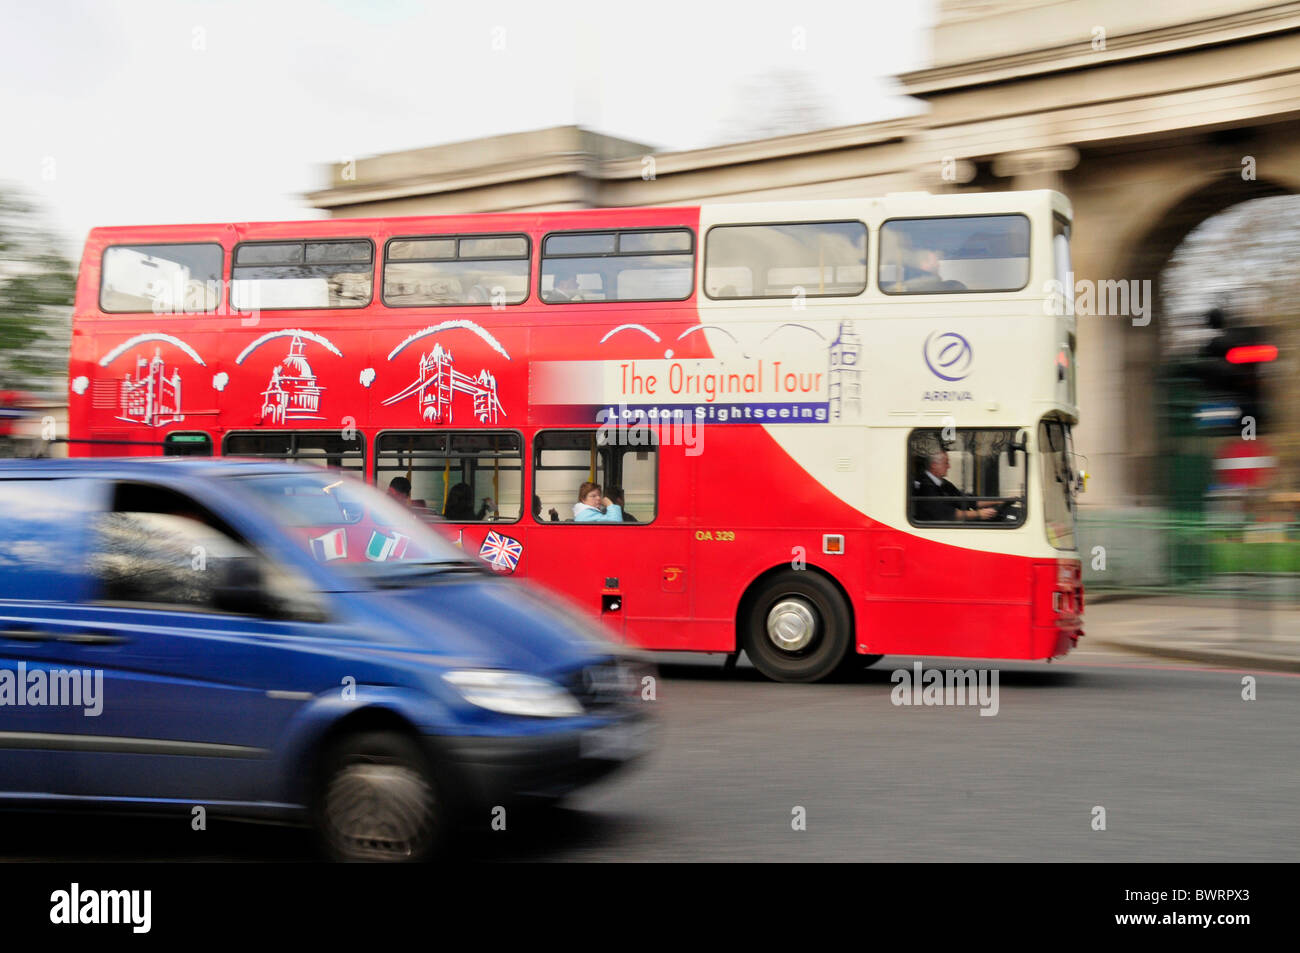 Bus de tourisme près de Knightsbridge, Londres, Angleterre, Royaume-Uni, Europe Banque D'Images